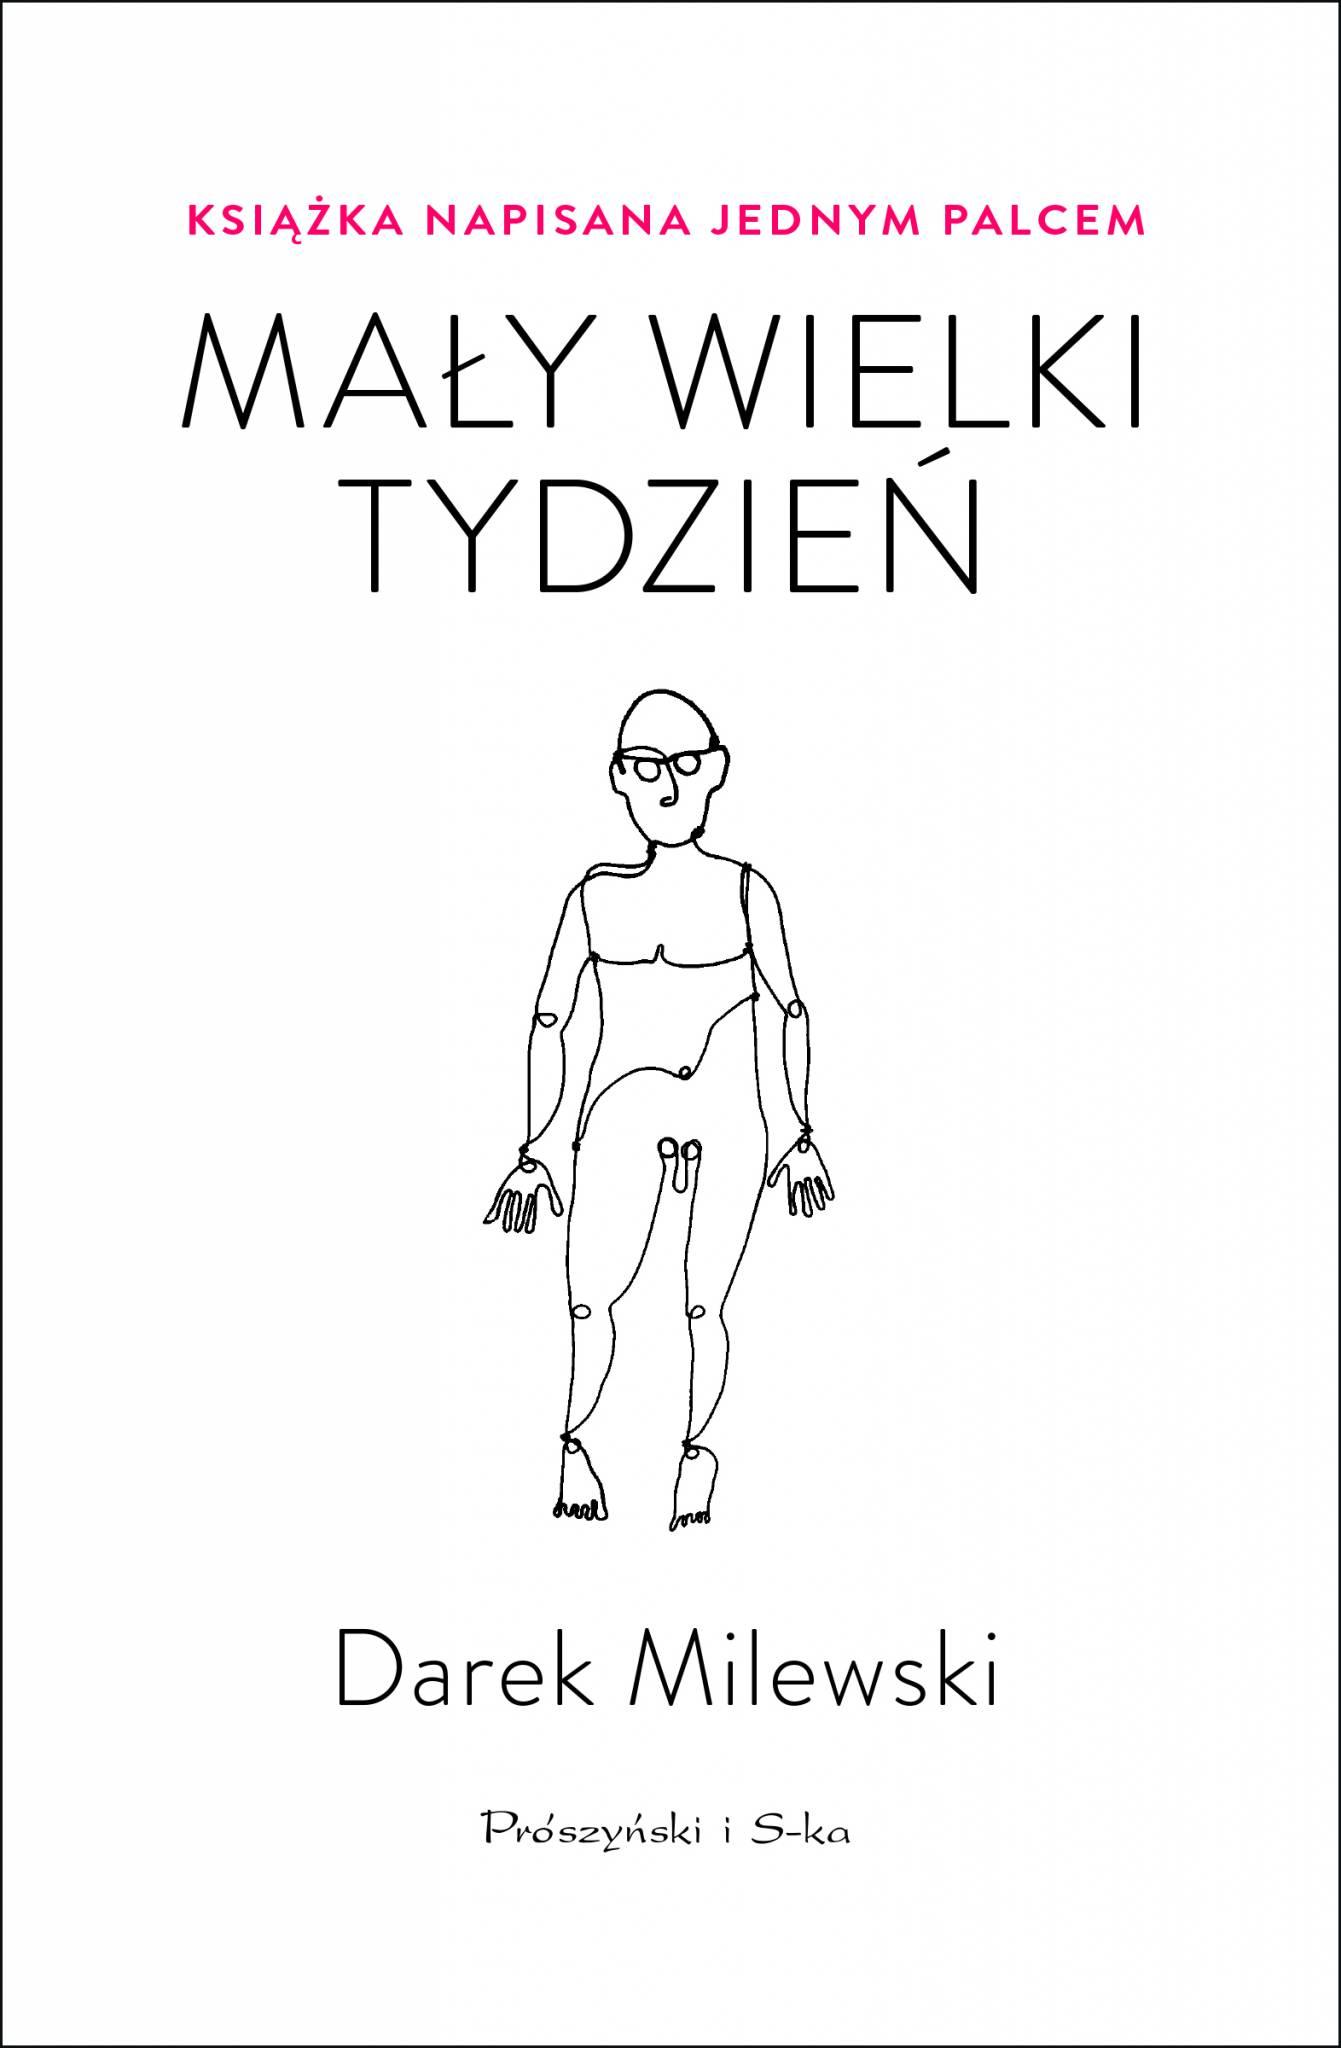  Książka „Mały wielki tydzień. Książka napisana jednym palcem” ukazała się nakładem wydawnictwa Prószyński i S-ka